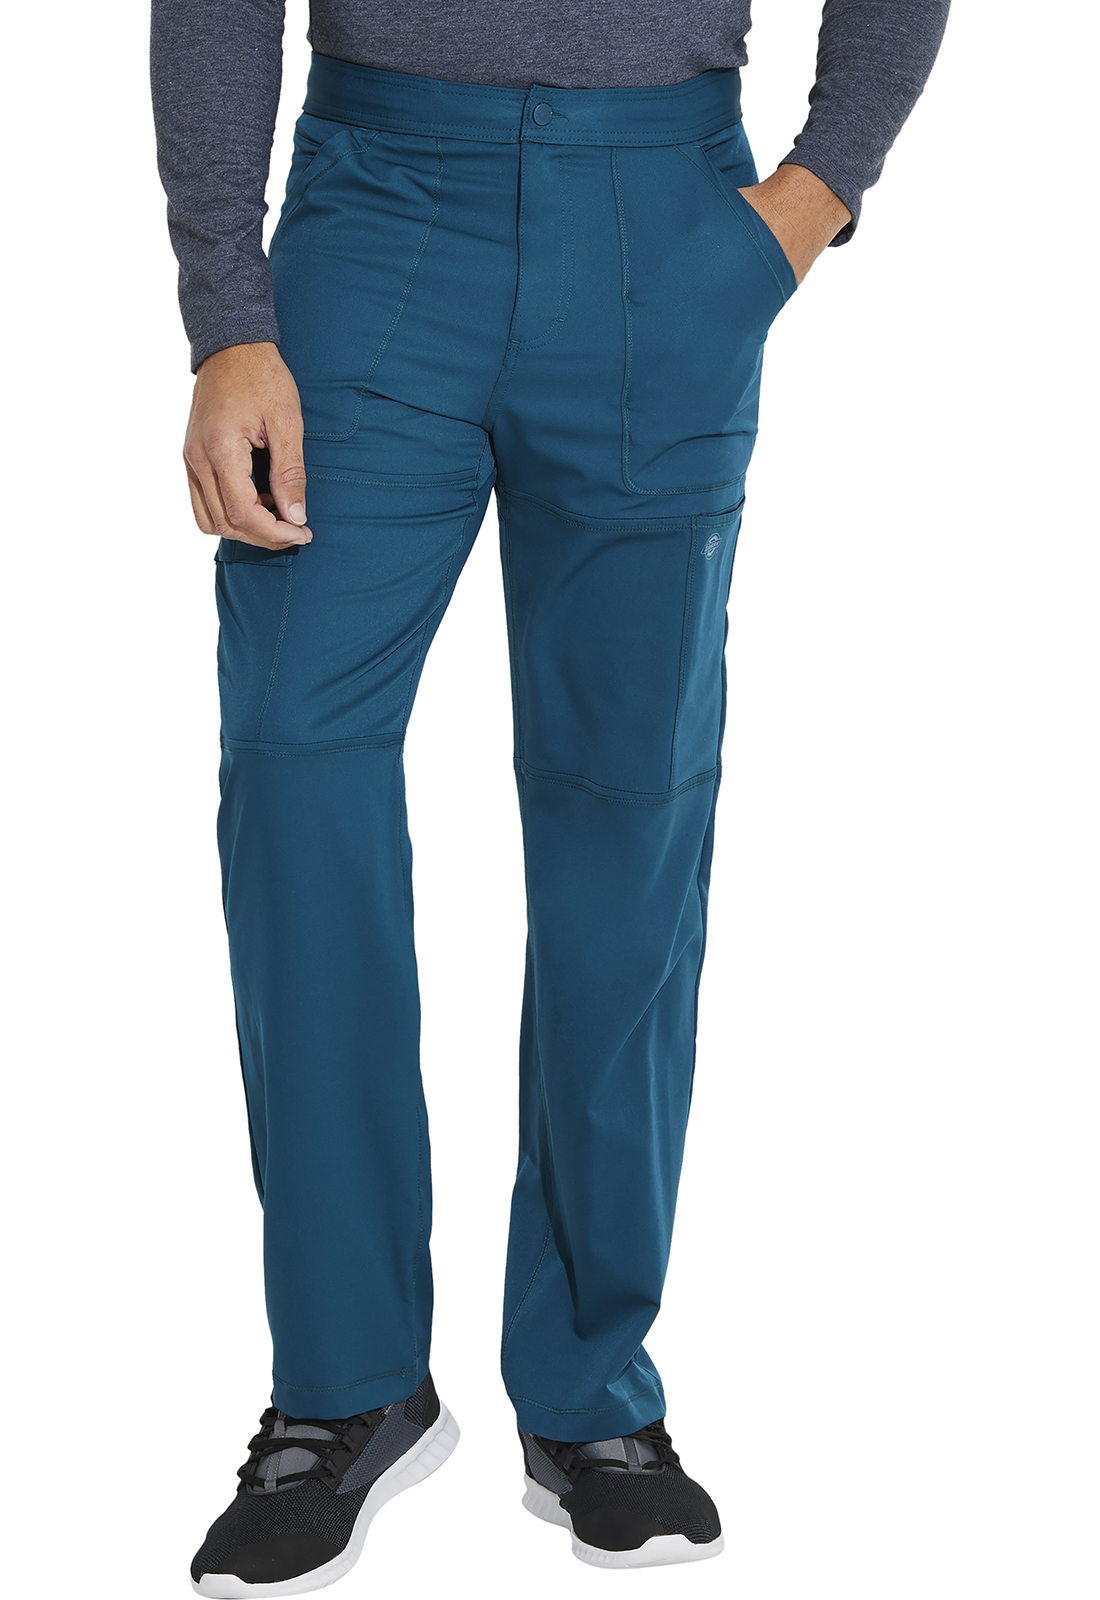 mens cargo pants blue